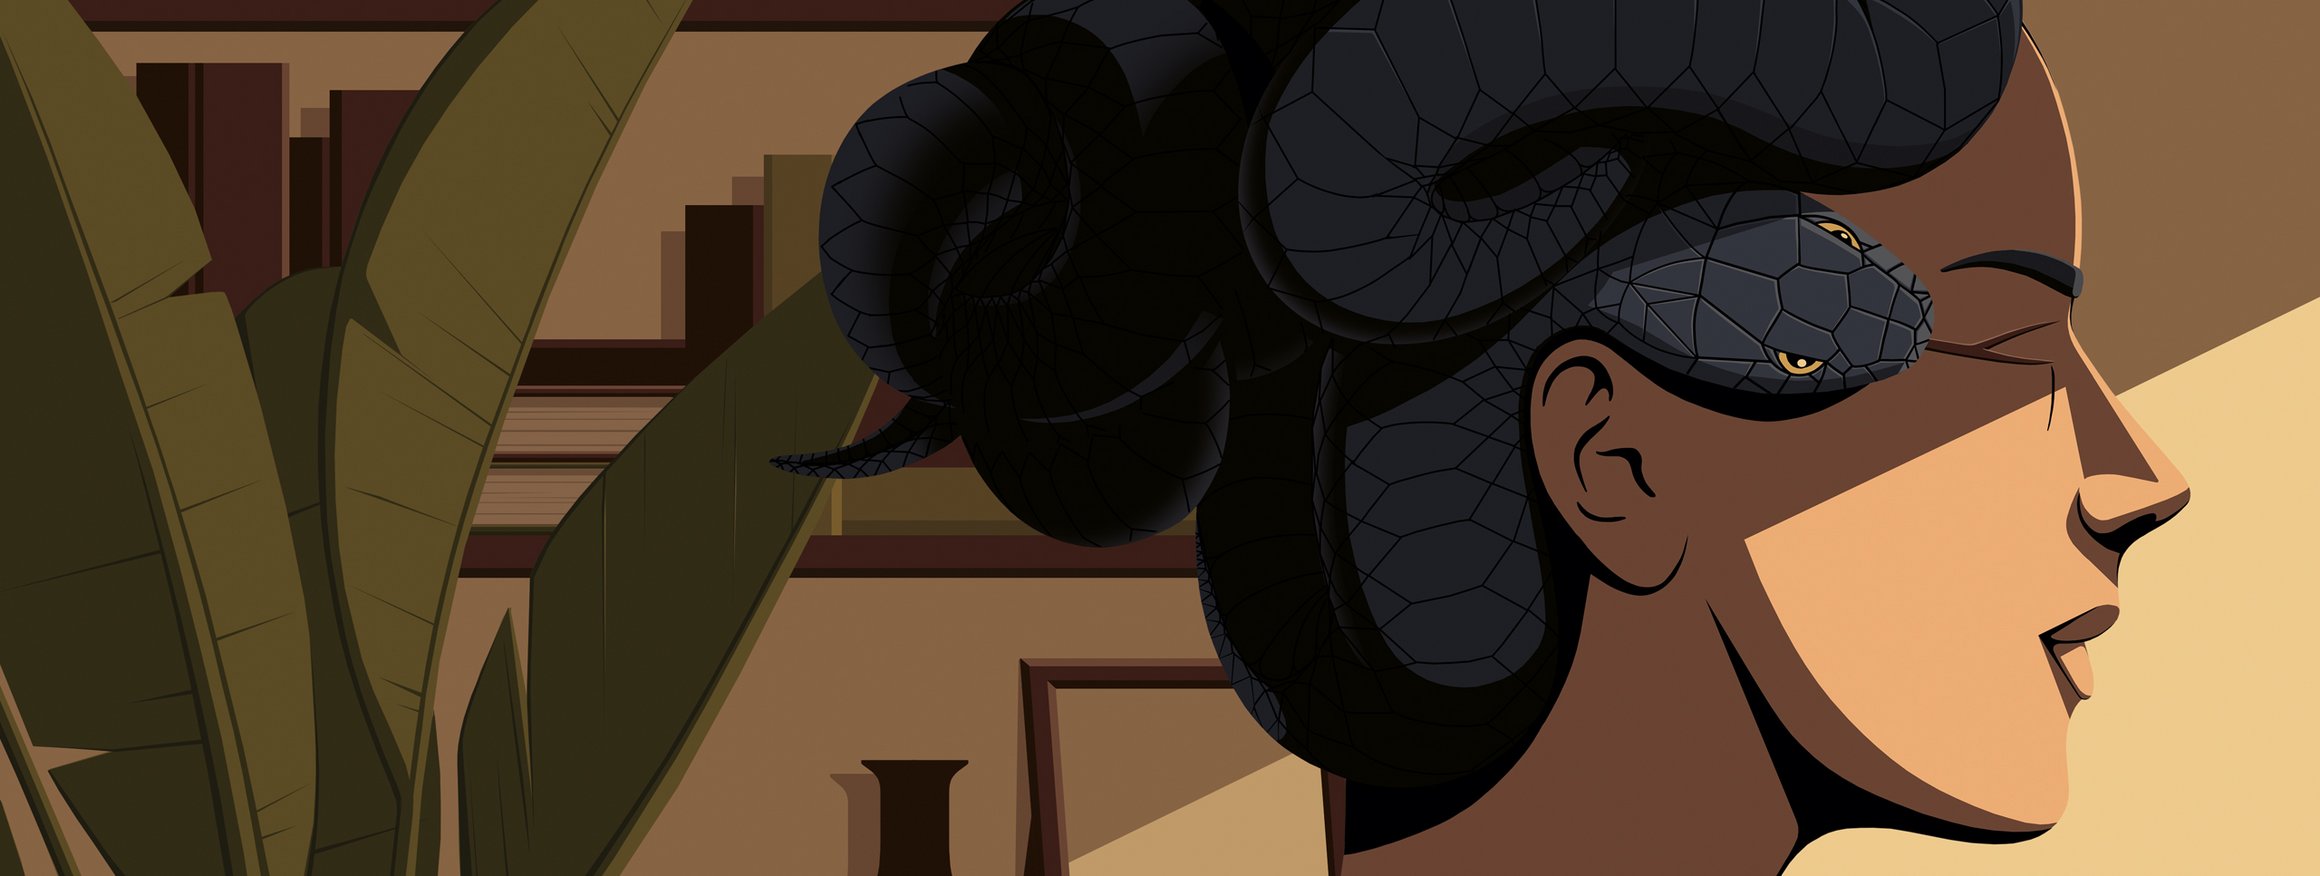 Die Illustration zeigt eine Frau, die als Haare eine gefährliche Schlange als Hochsteckfrisur trägt